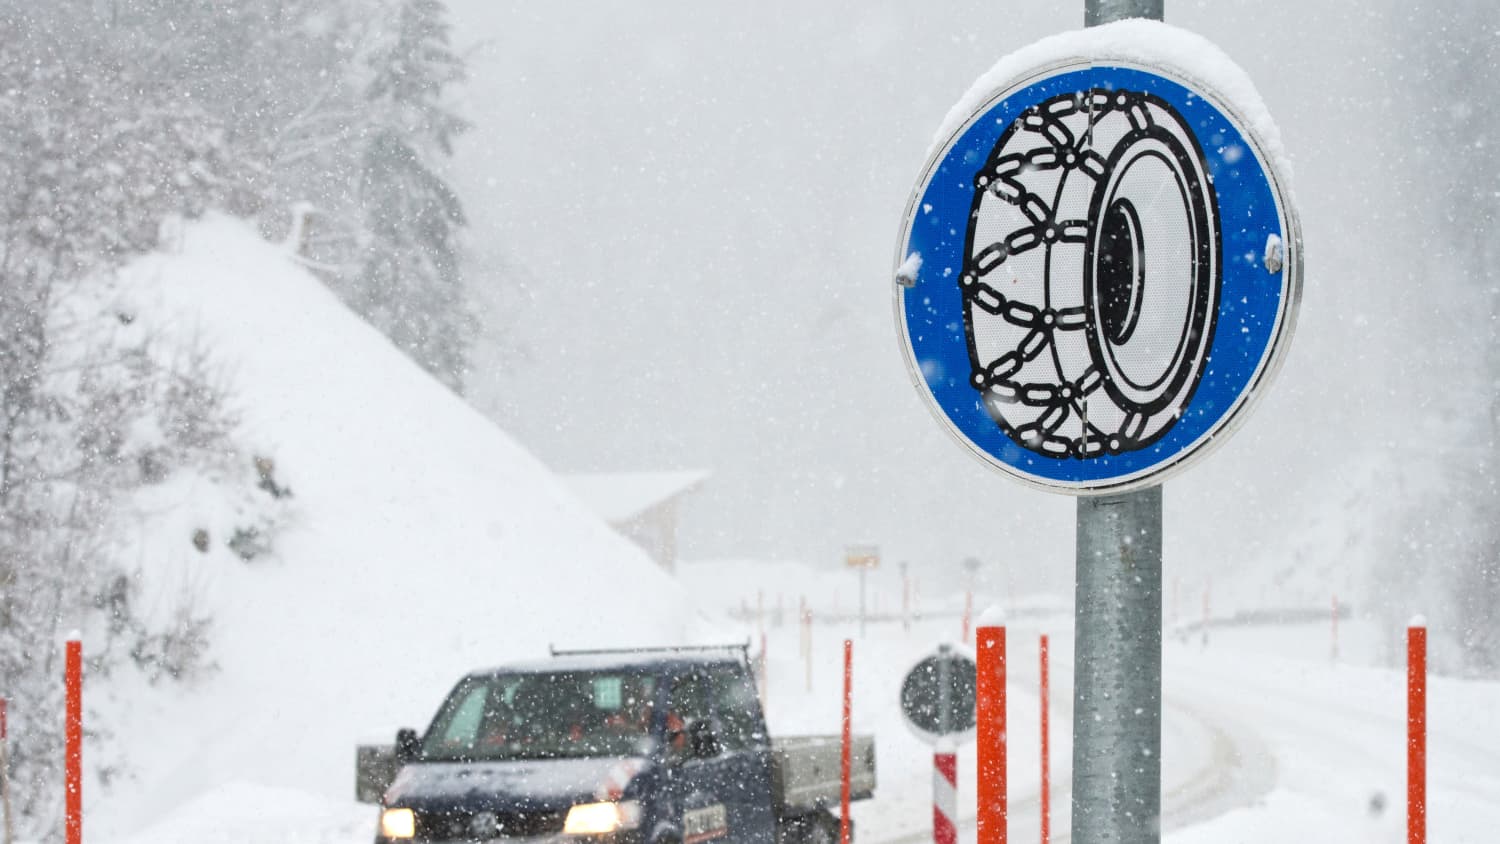 Straßenverkehrssicherheit: Wann sind Schneeketten notwendig?